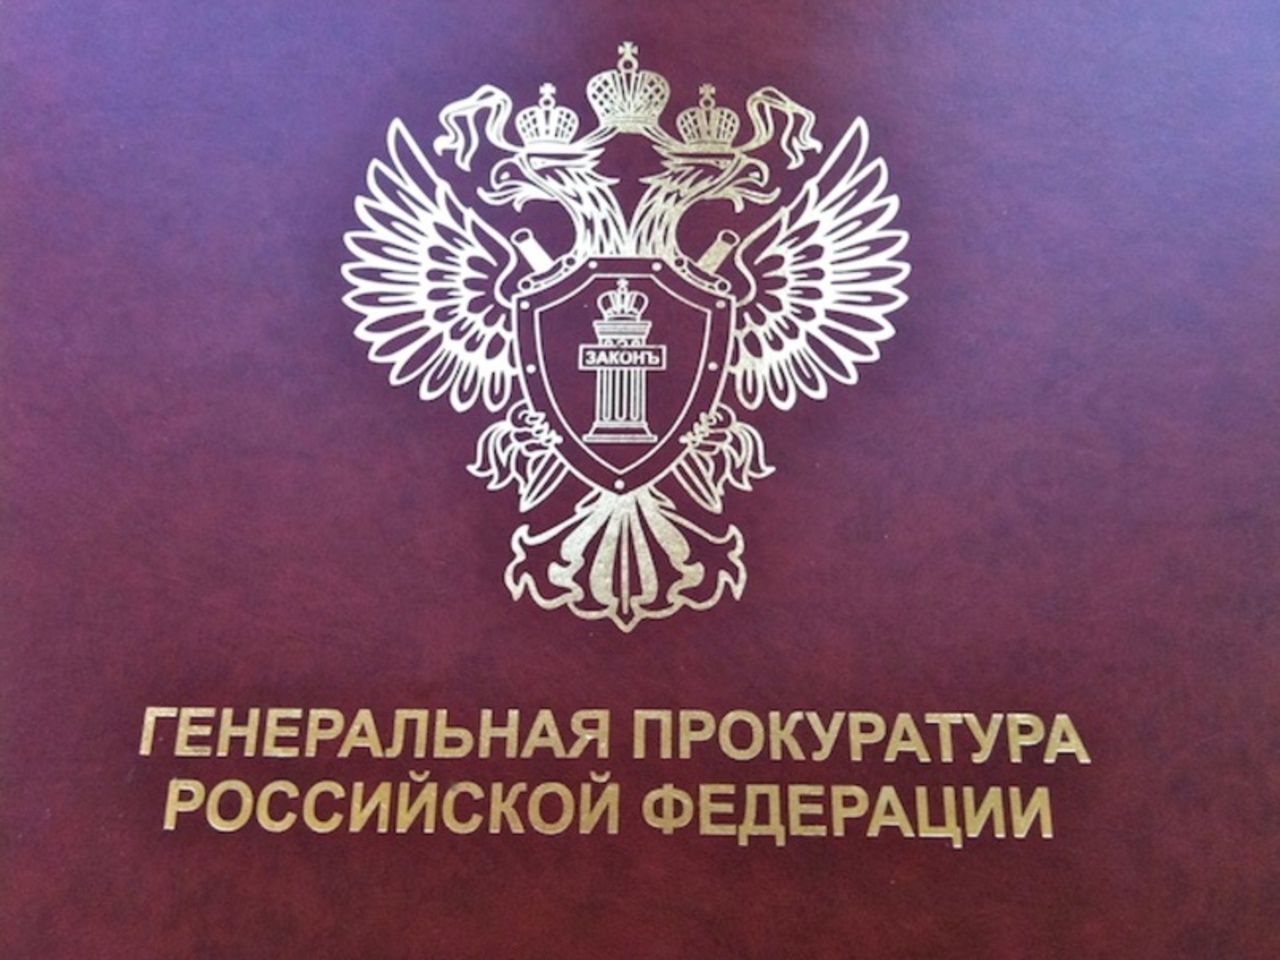 Герб прокуратуры Российской Федерации